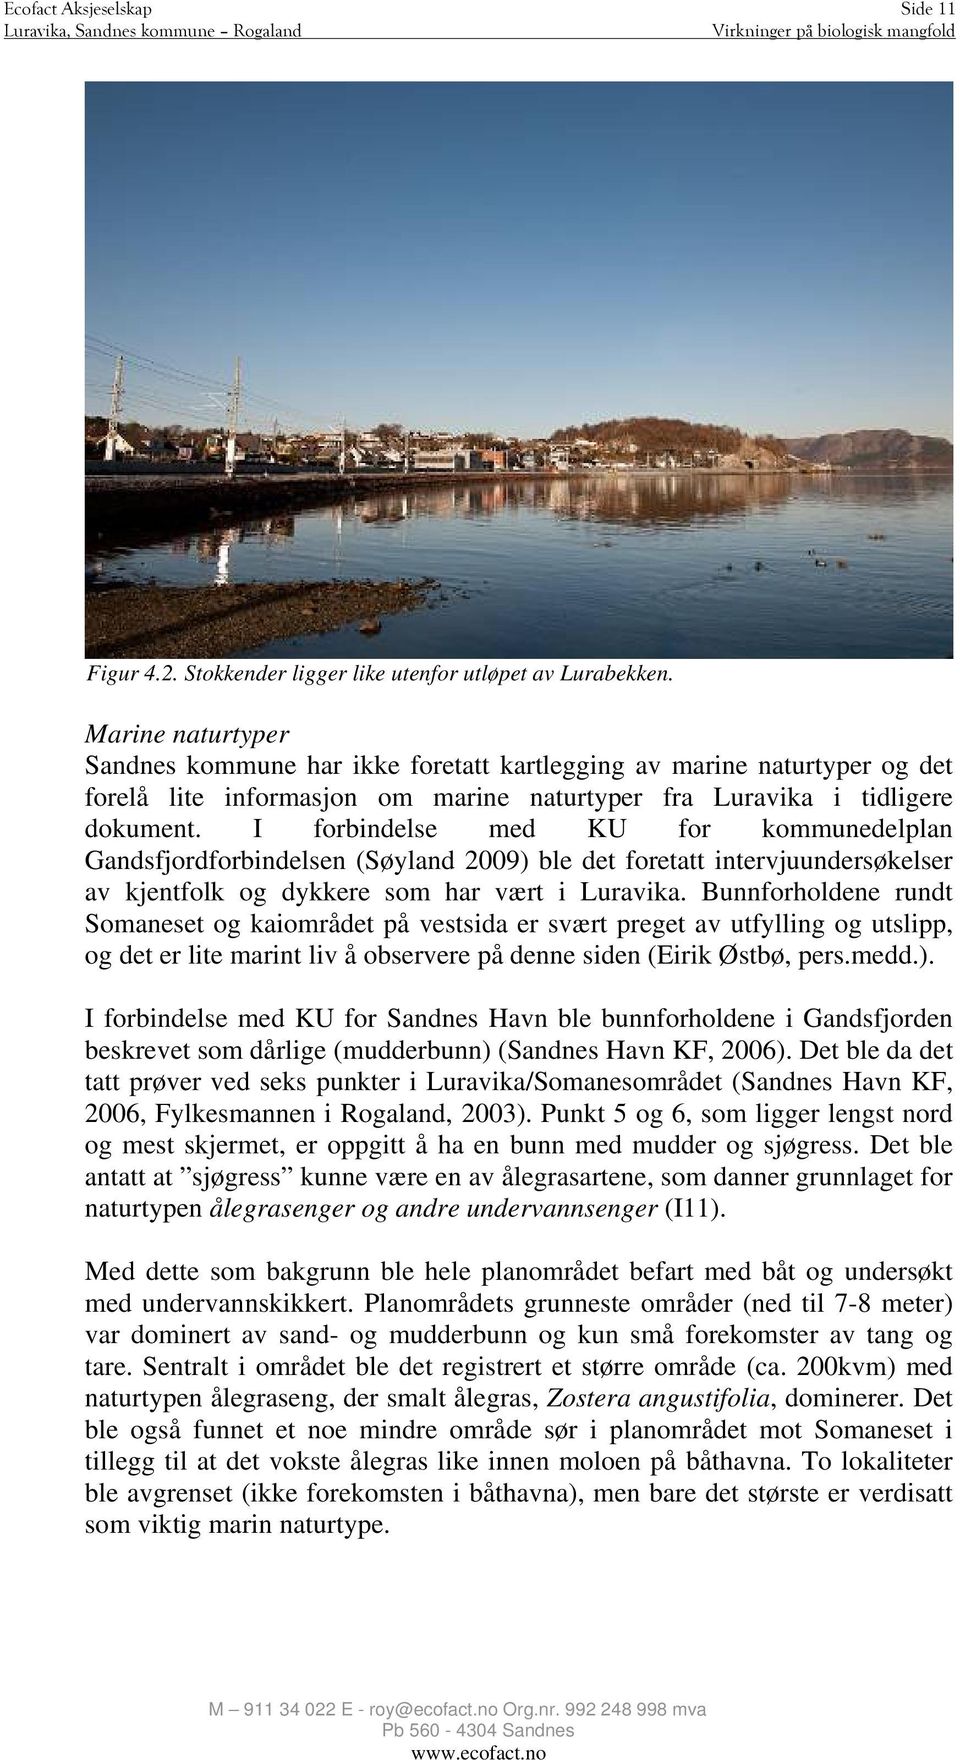 I forbindelse med KU for kommunedelplan Gandsfjordforbindelsen (Søyland 2009) ble det foretatt intervjuundersøkelser av kjentfolk og dykkere som har vært i Luravika.